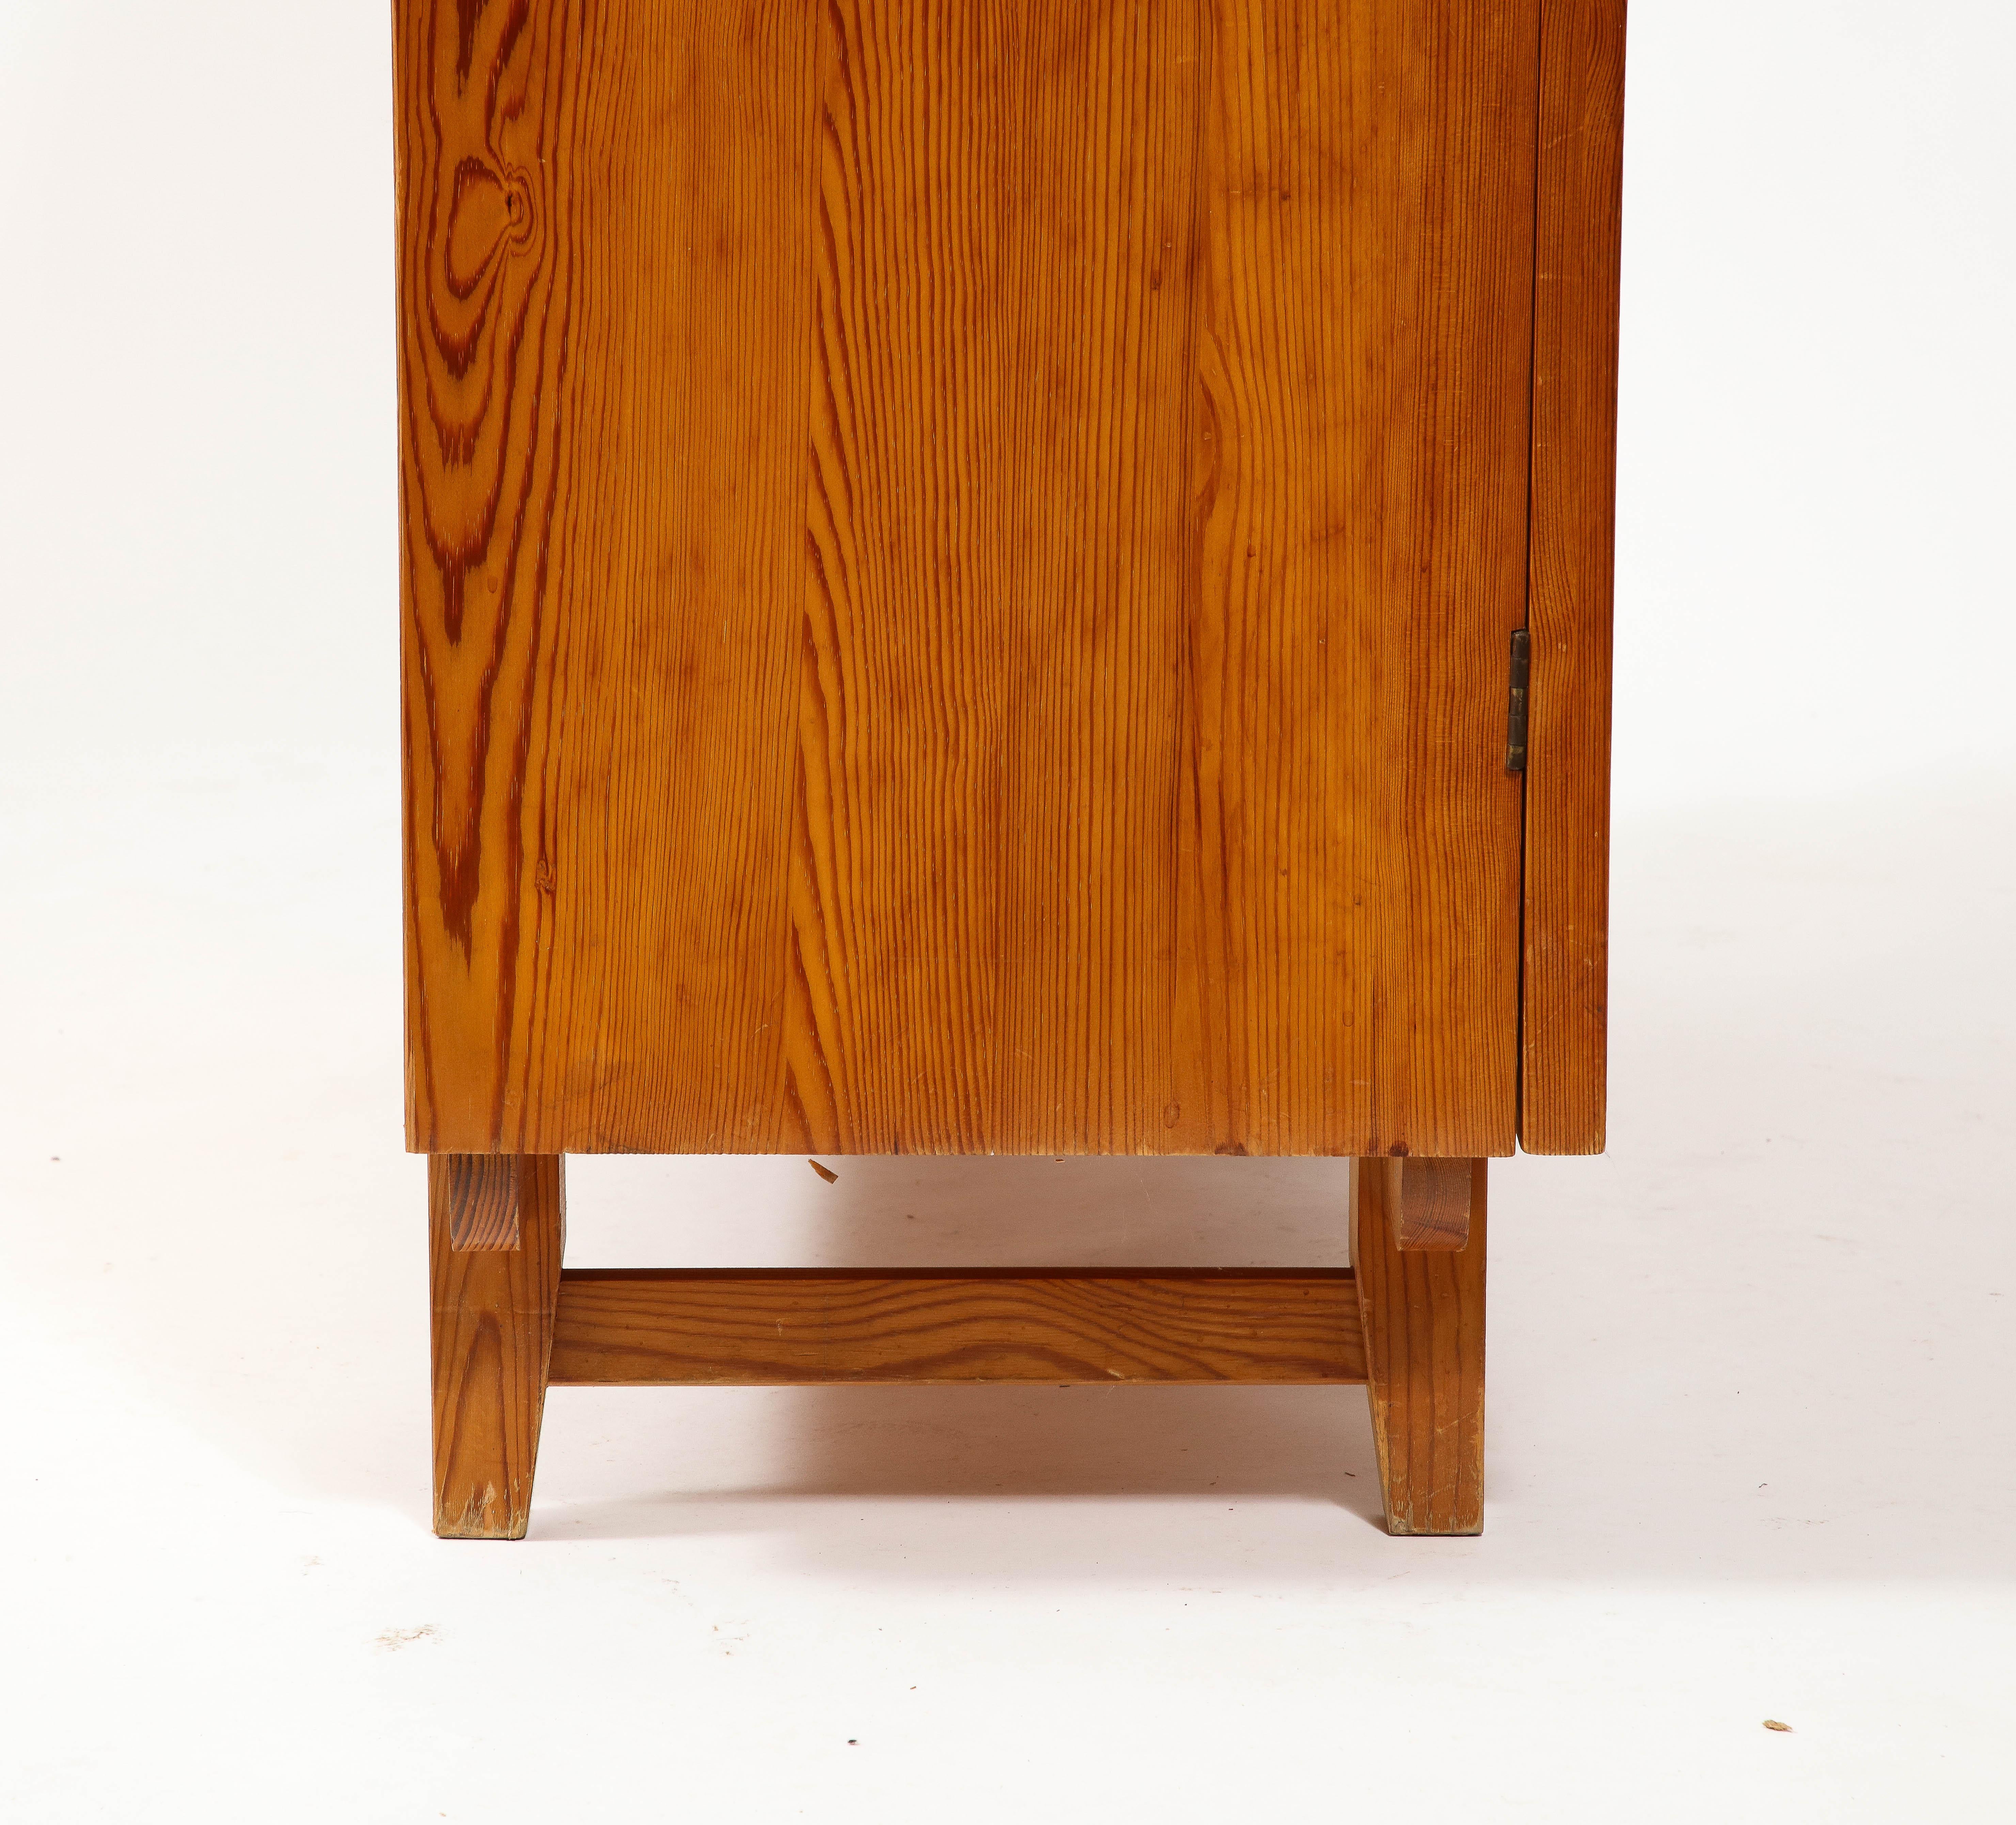 Göran Malmvall Svensk Stamped Modernist Rustic Pine Cabinet, Sweden 1950's For Sale 3